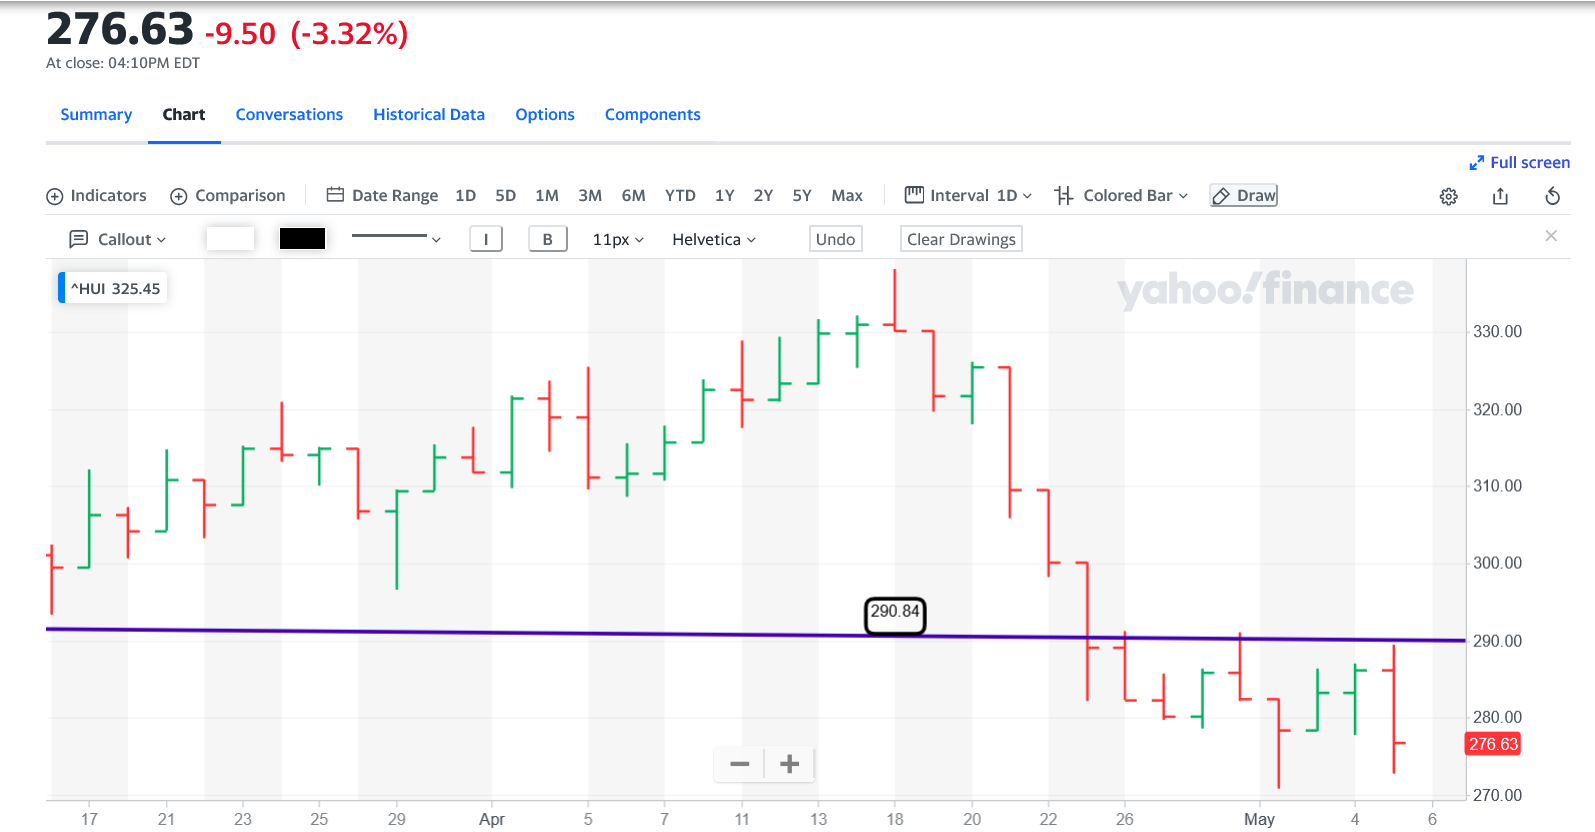 Screenshot 2022-05-05 at 16-51-24 NYSE ARCA GOLD BUGS INDEX (^HUI) Charts Data & News - Yahoo Finance.png